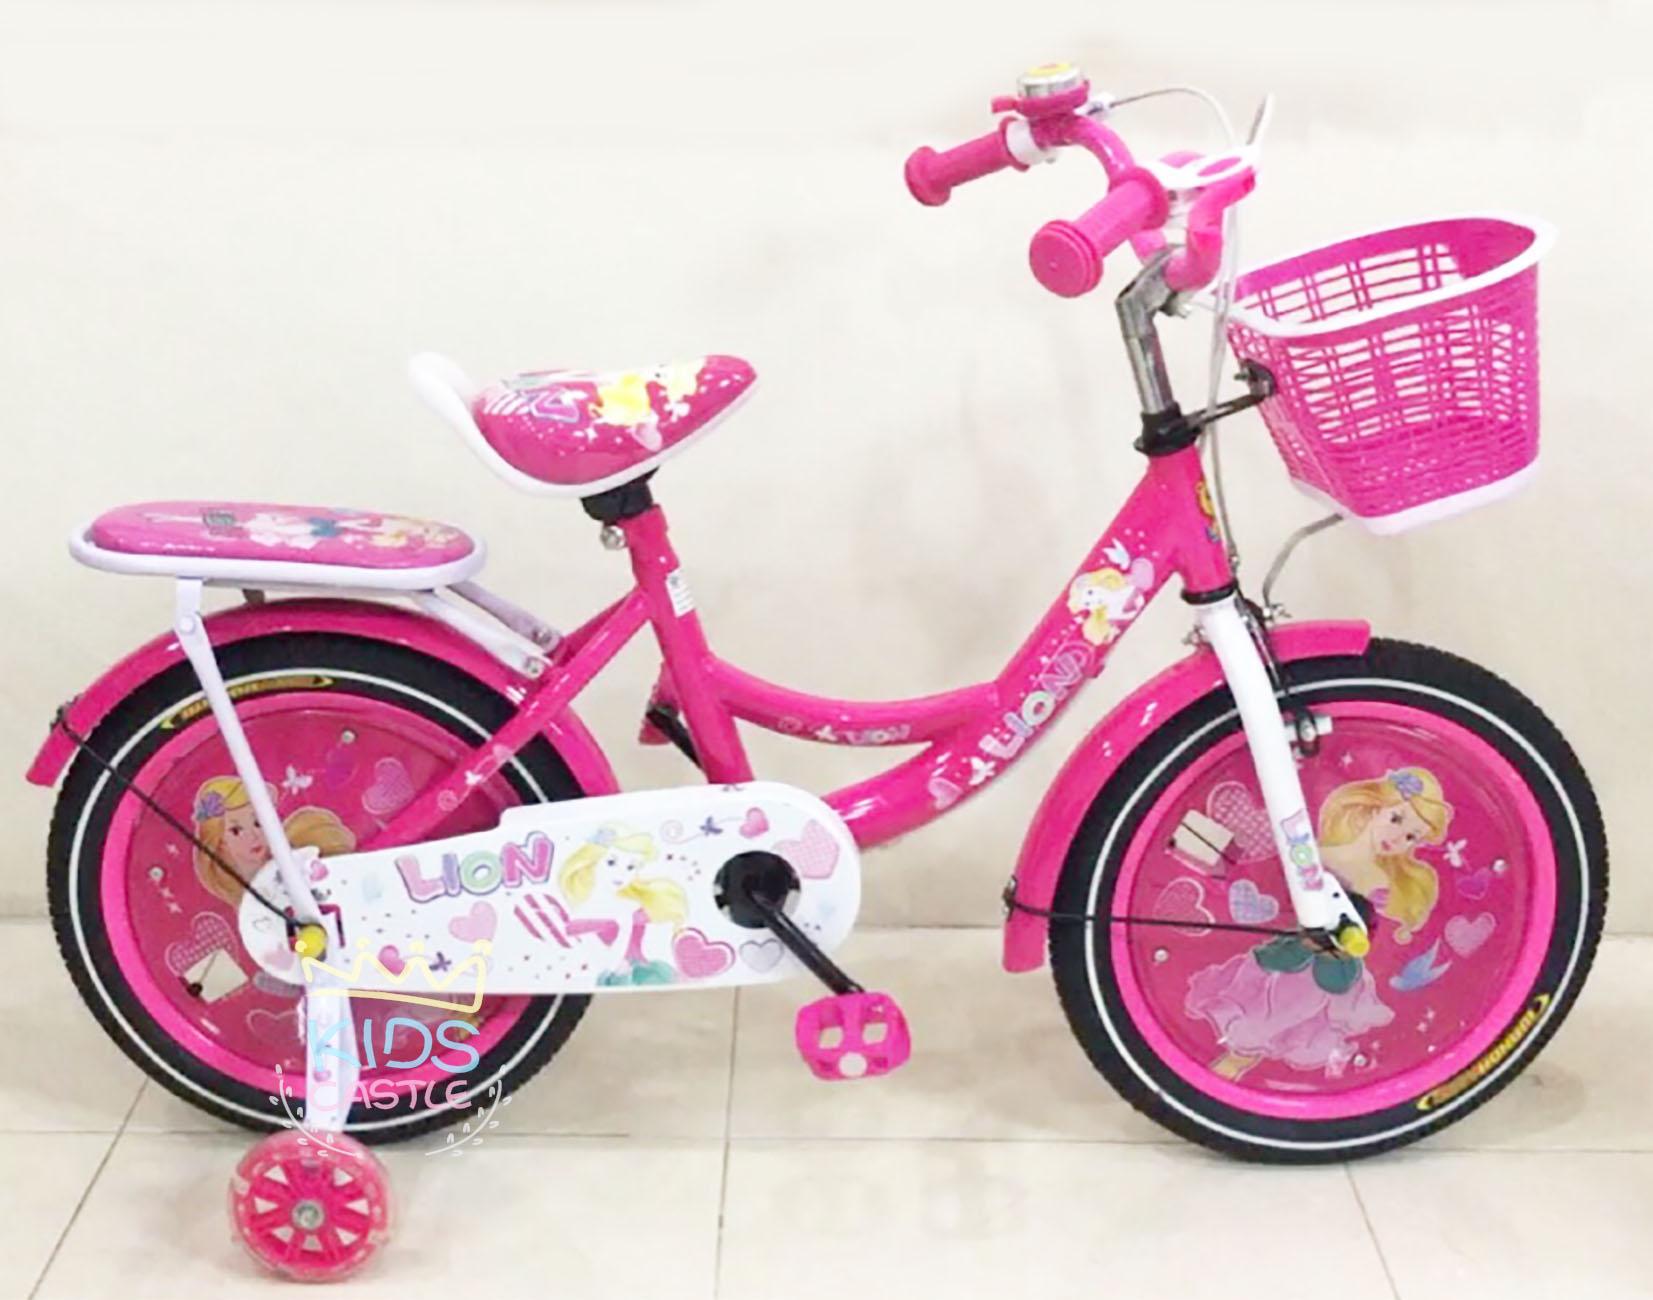 Kids castle รถจักรยานเด็กลายเจ้าหญิงสีชมหวาน ขนาด 12